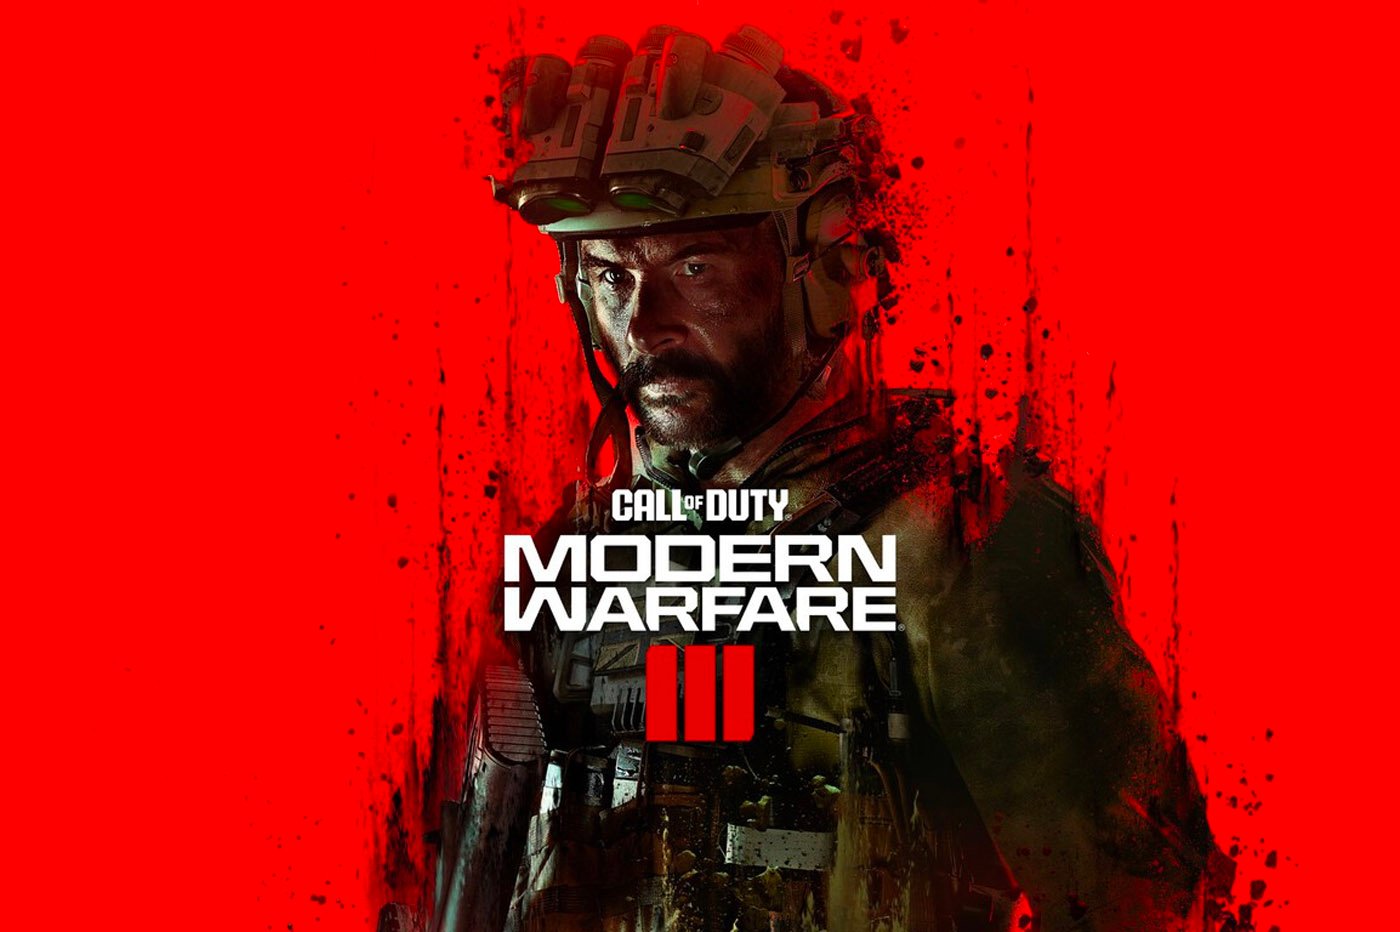 Le nouveau Call of Duty Modern Warfare 3 est disponible en